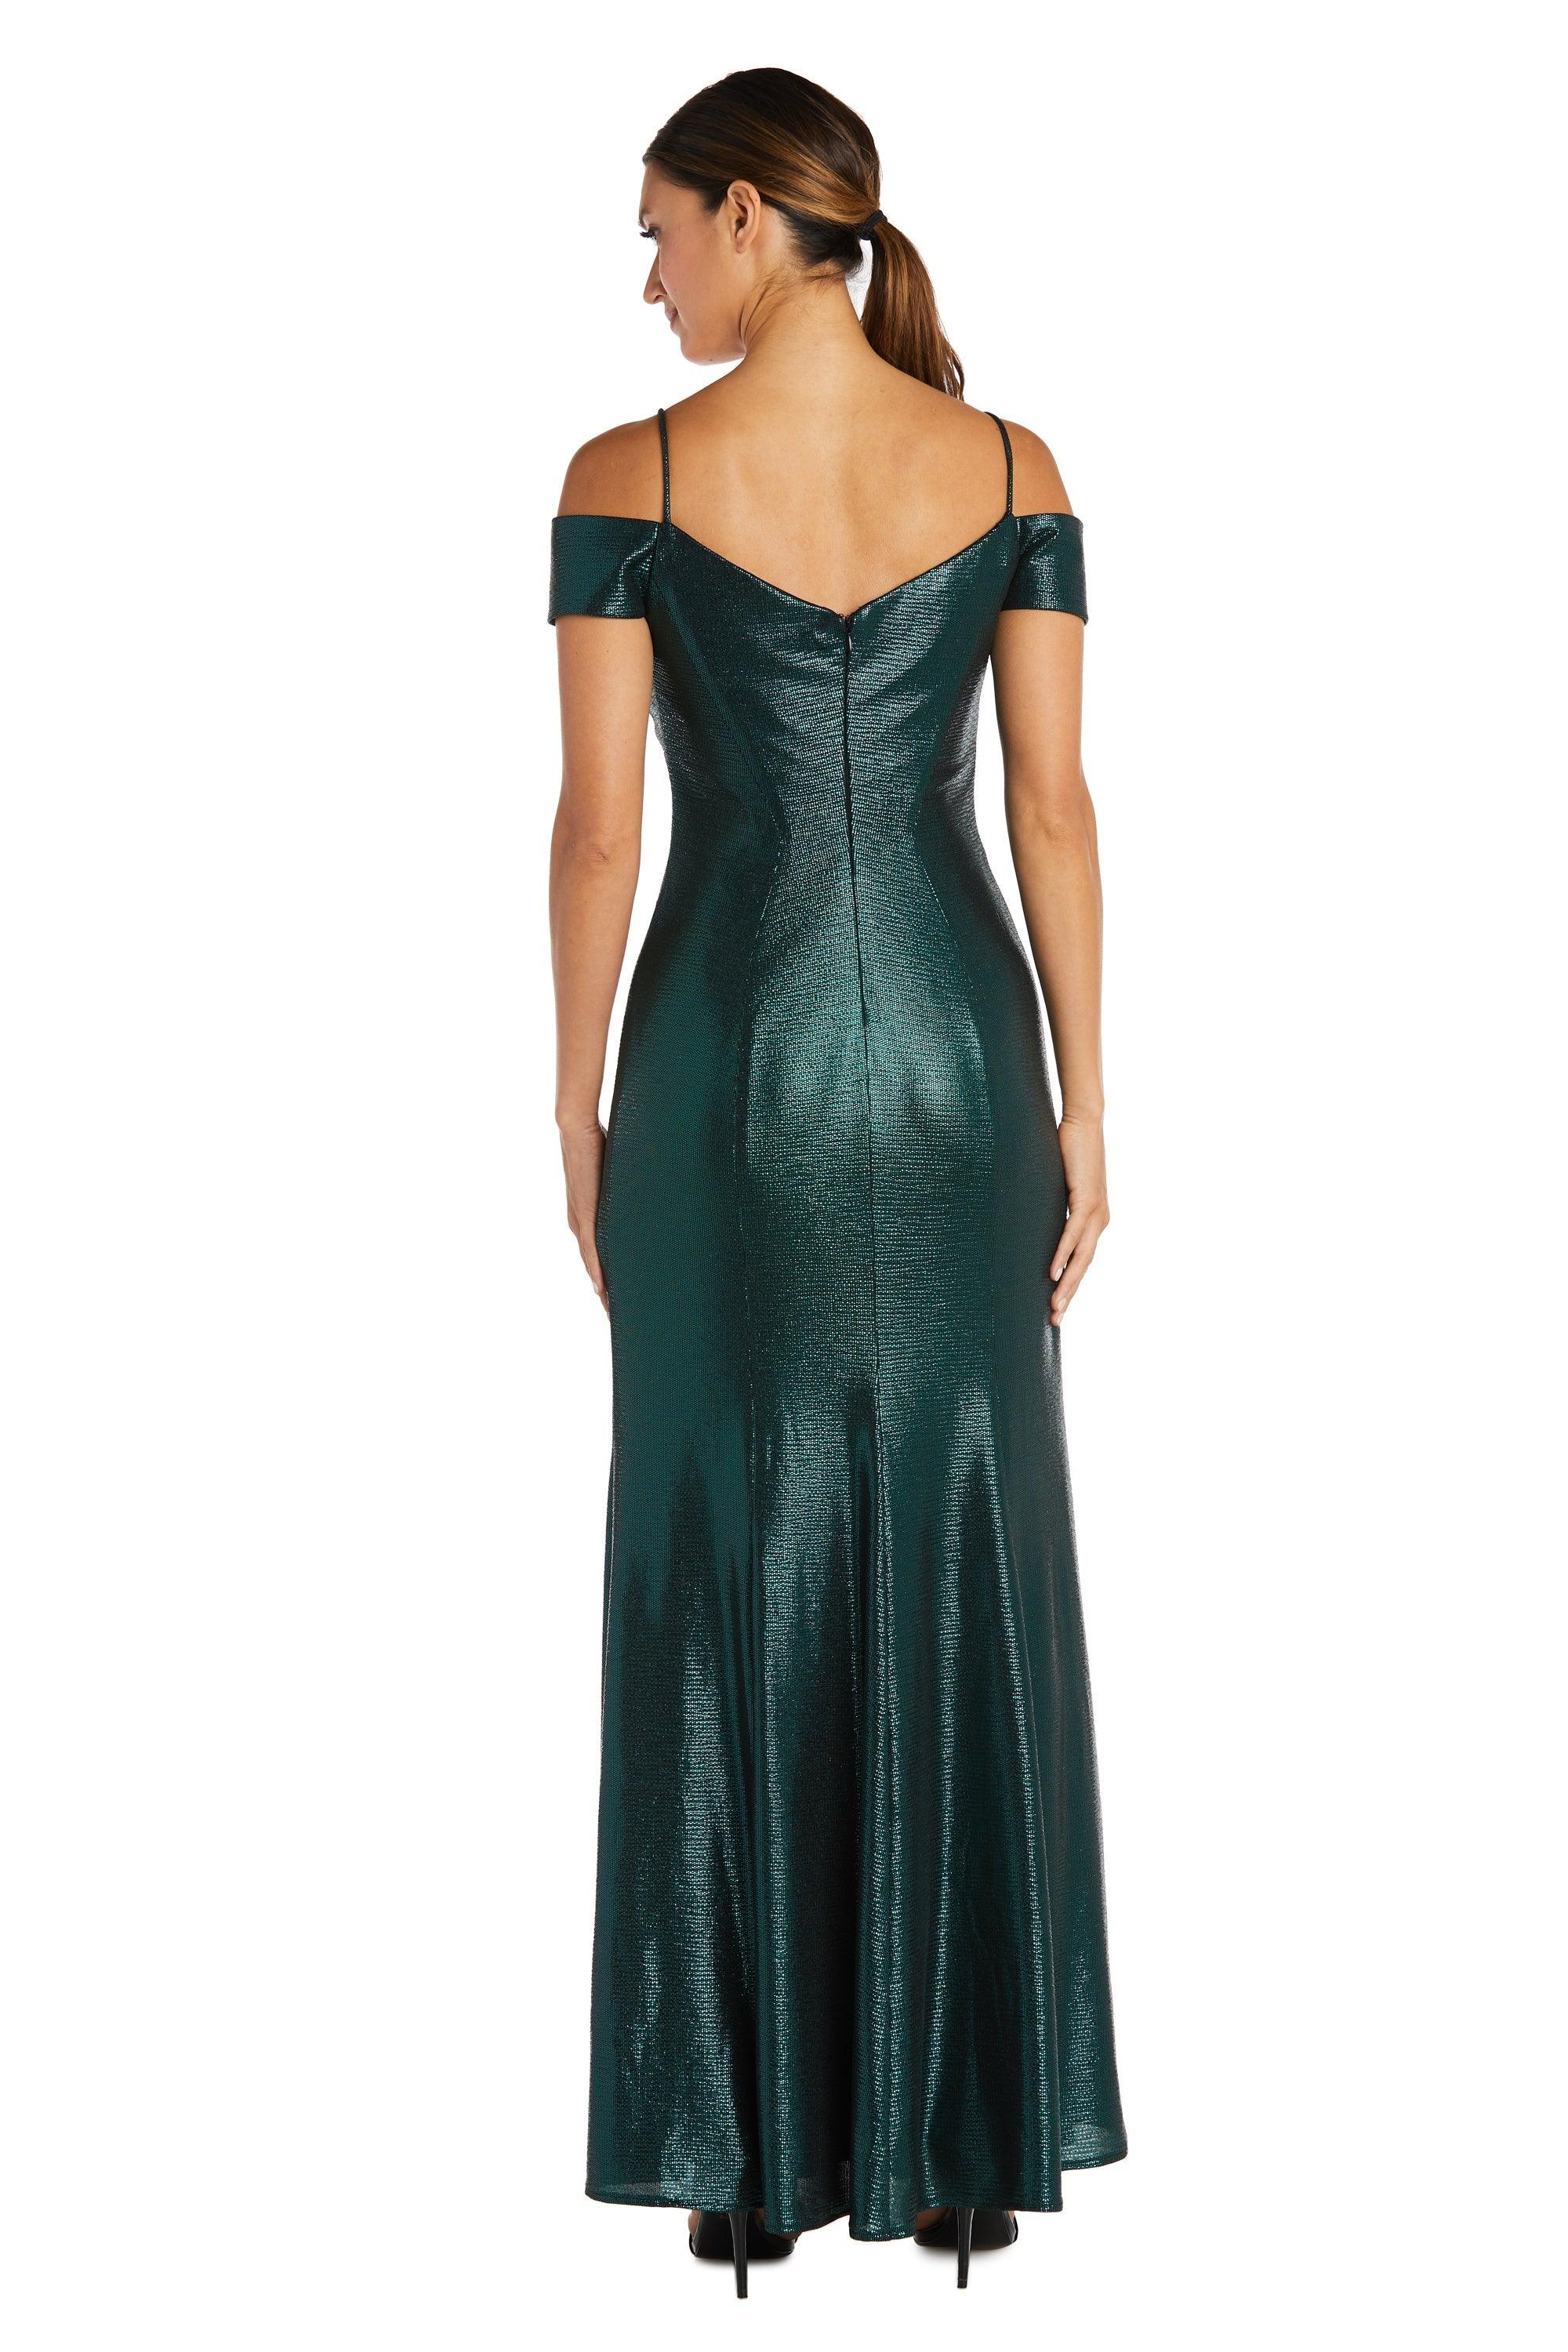 Nightway Off Shoulder Long Formal Dress 21761P - The Dress Outlet